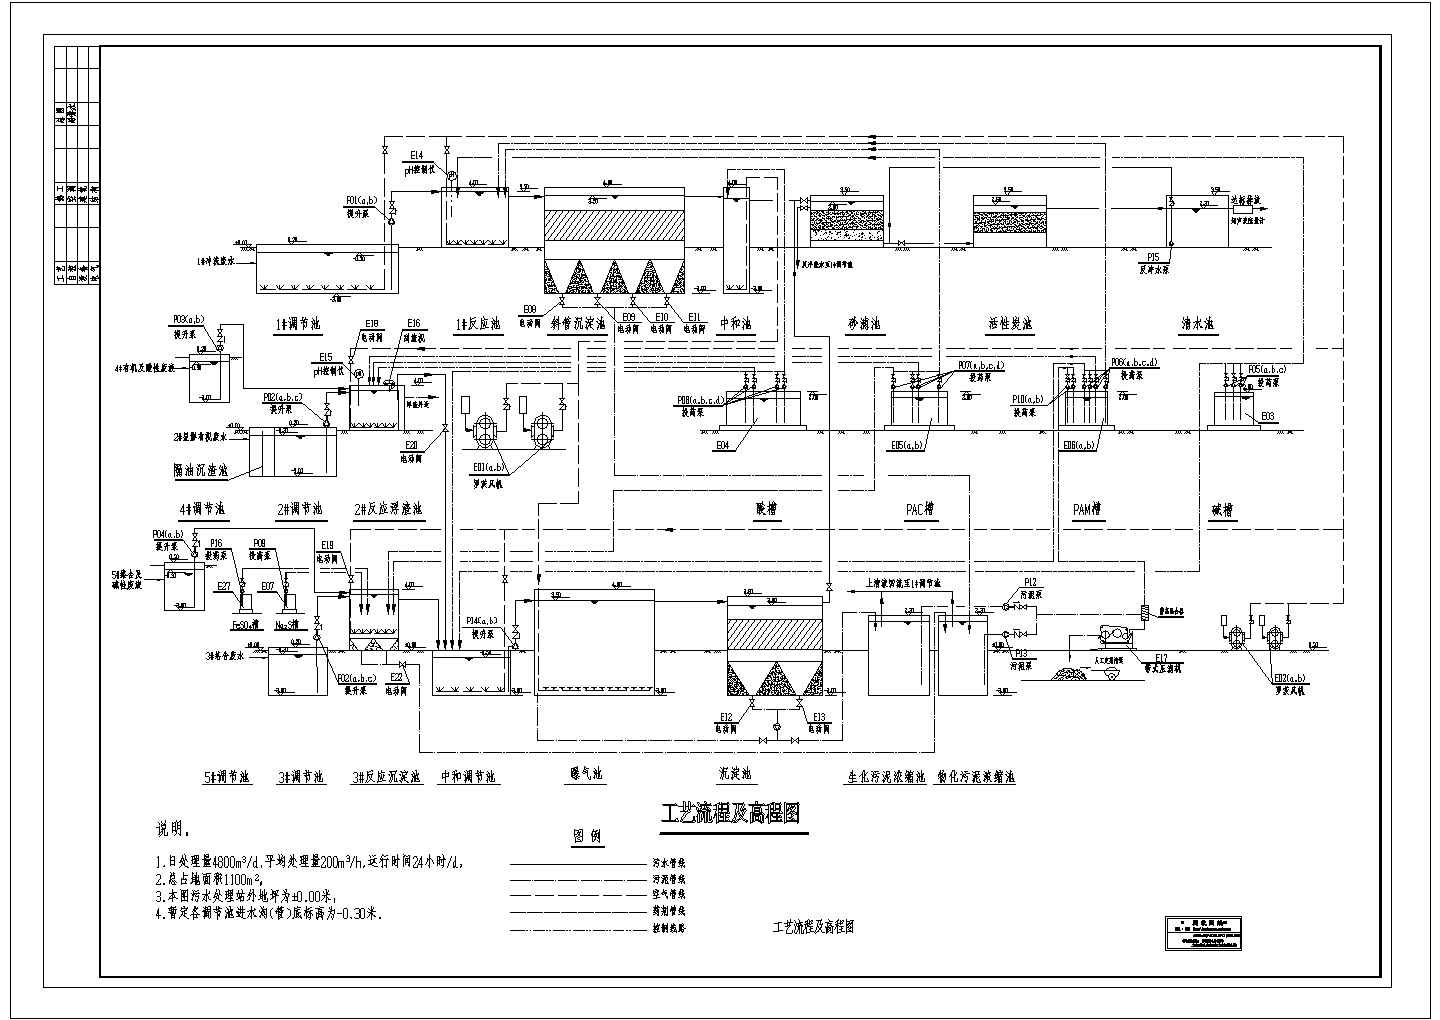 某印刷电路板厂污水水解酸化处理流程图CAD构造图纸